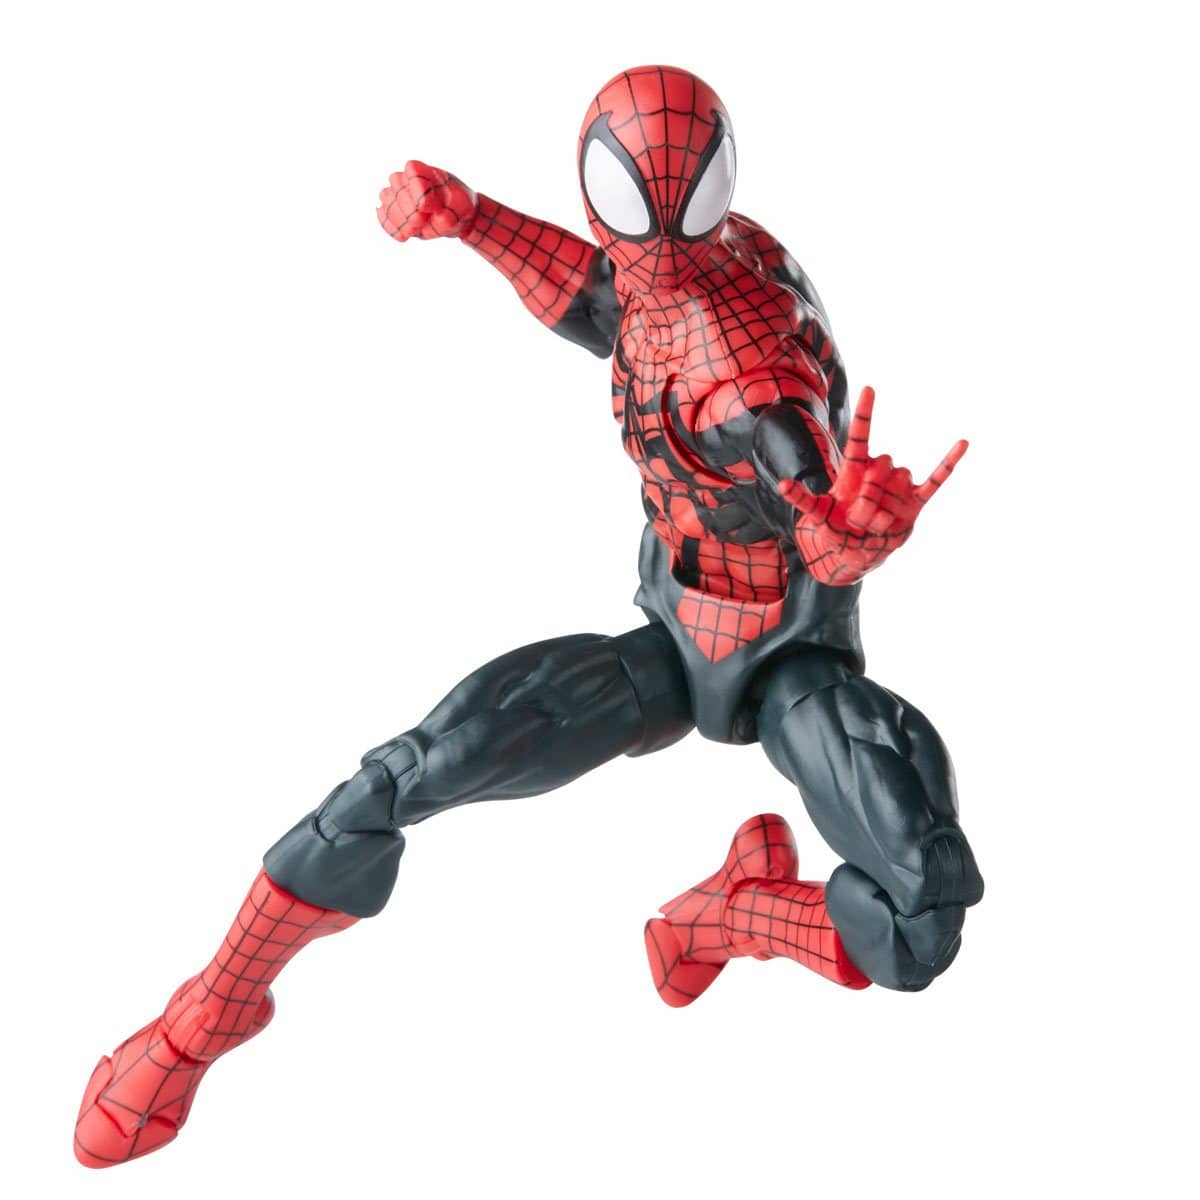 Spider-Man Retro Marvel Legends Ben Reilly Spider-Man 6-Inch Action Figure Flying Punch